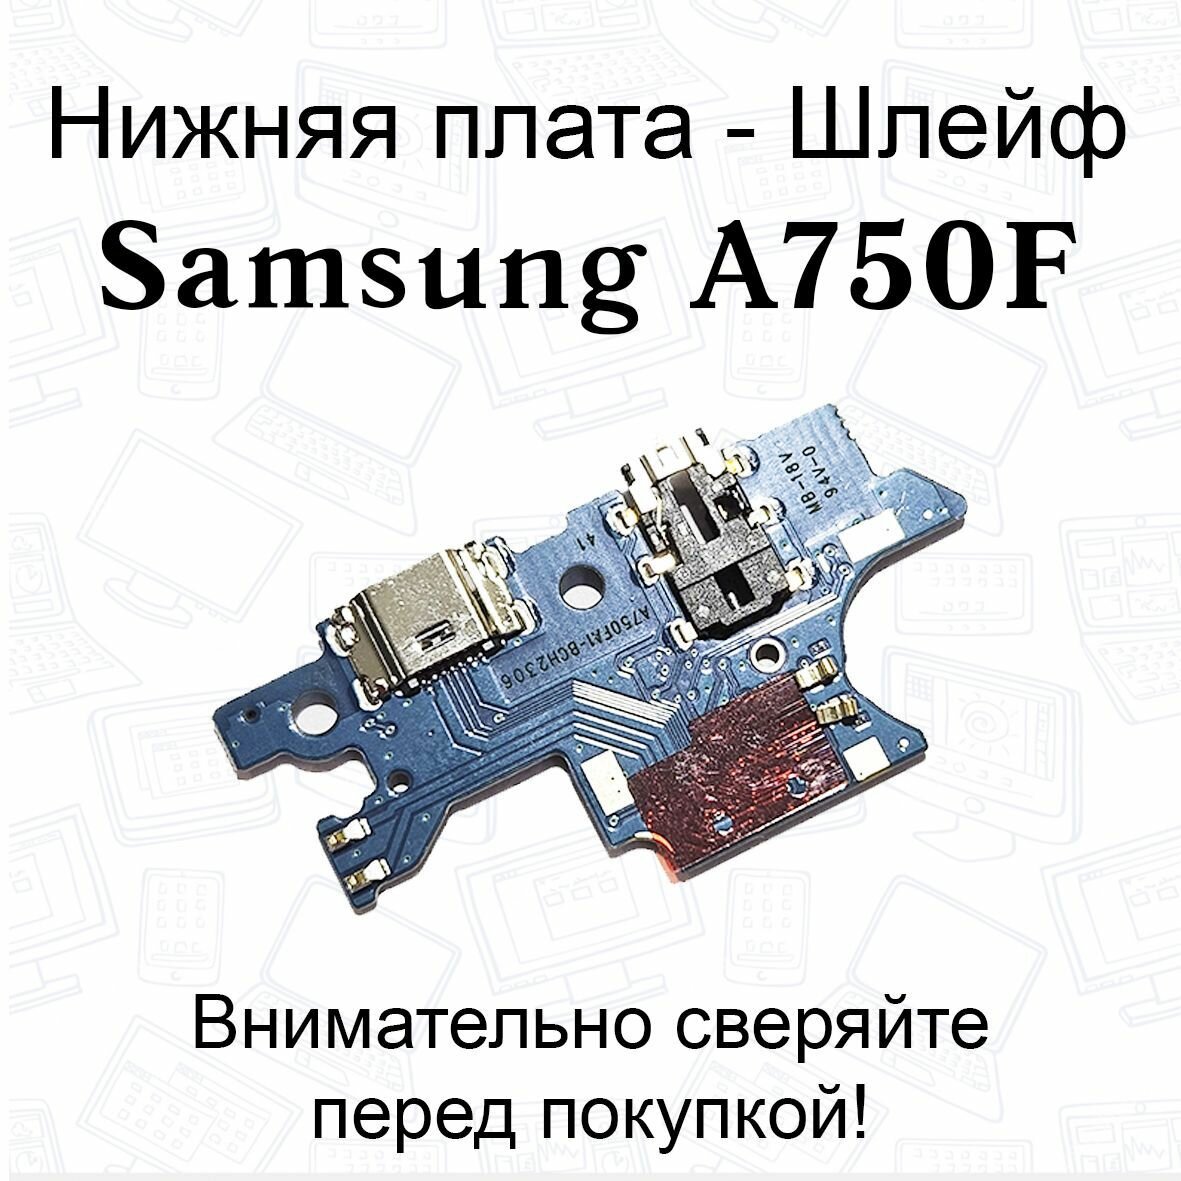 Нижняя плата/шлейфдля Samsung Galaxy A7 (A750F) системный разъем/разъем гарнитуры/микрофон OEM